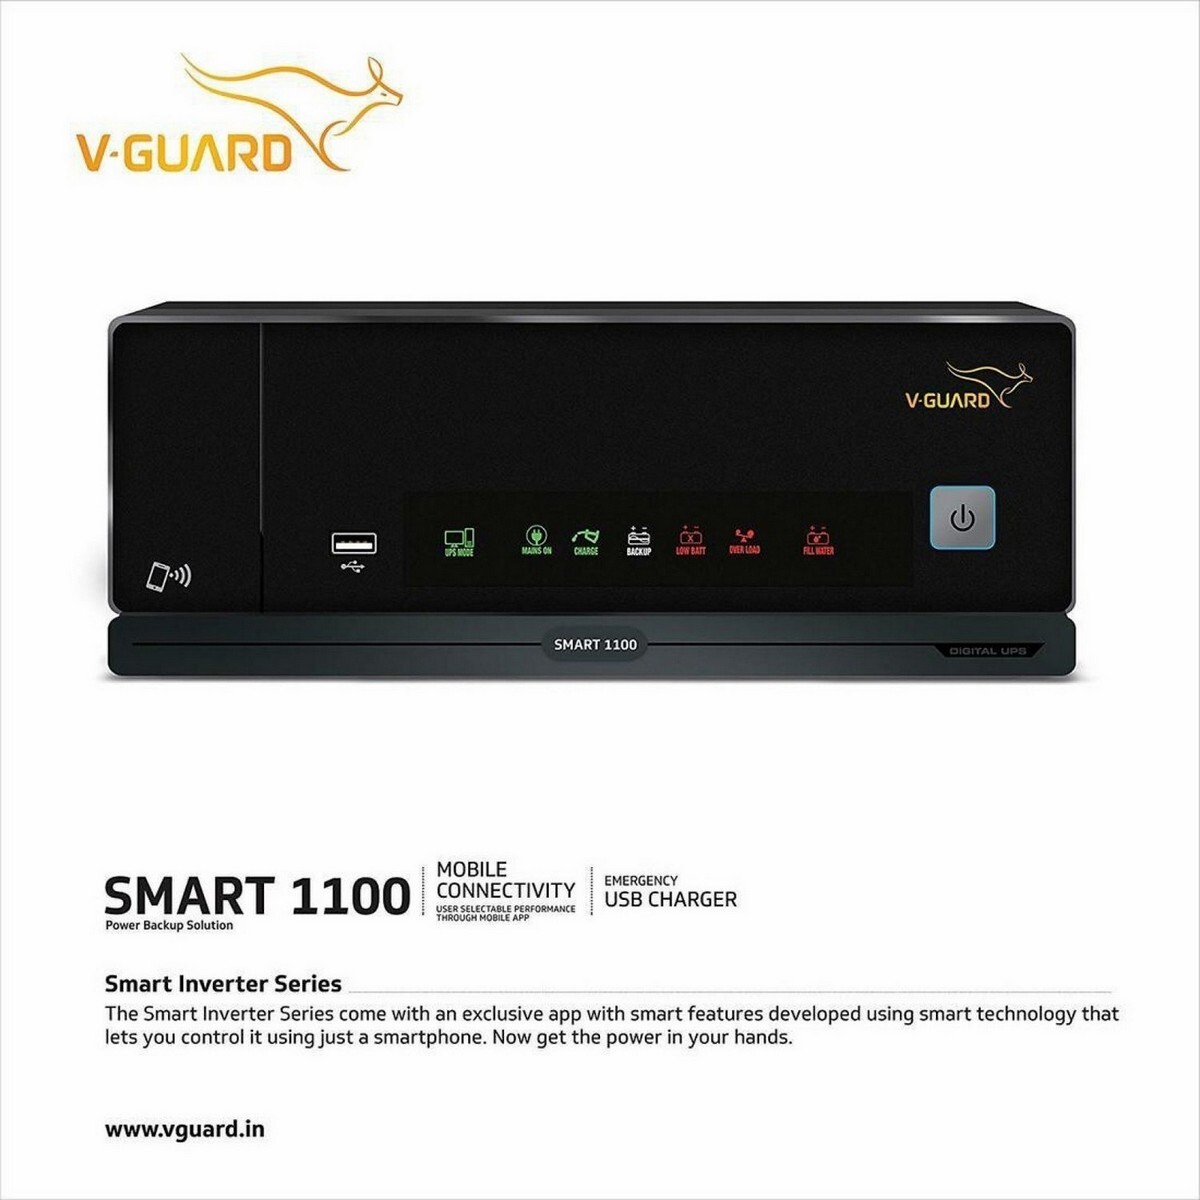 V-Guard Digital UPS Smart 1100